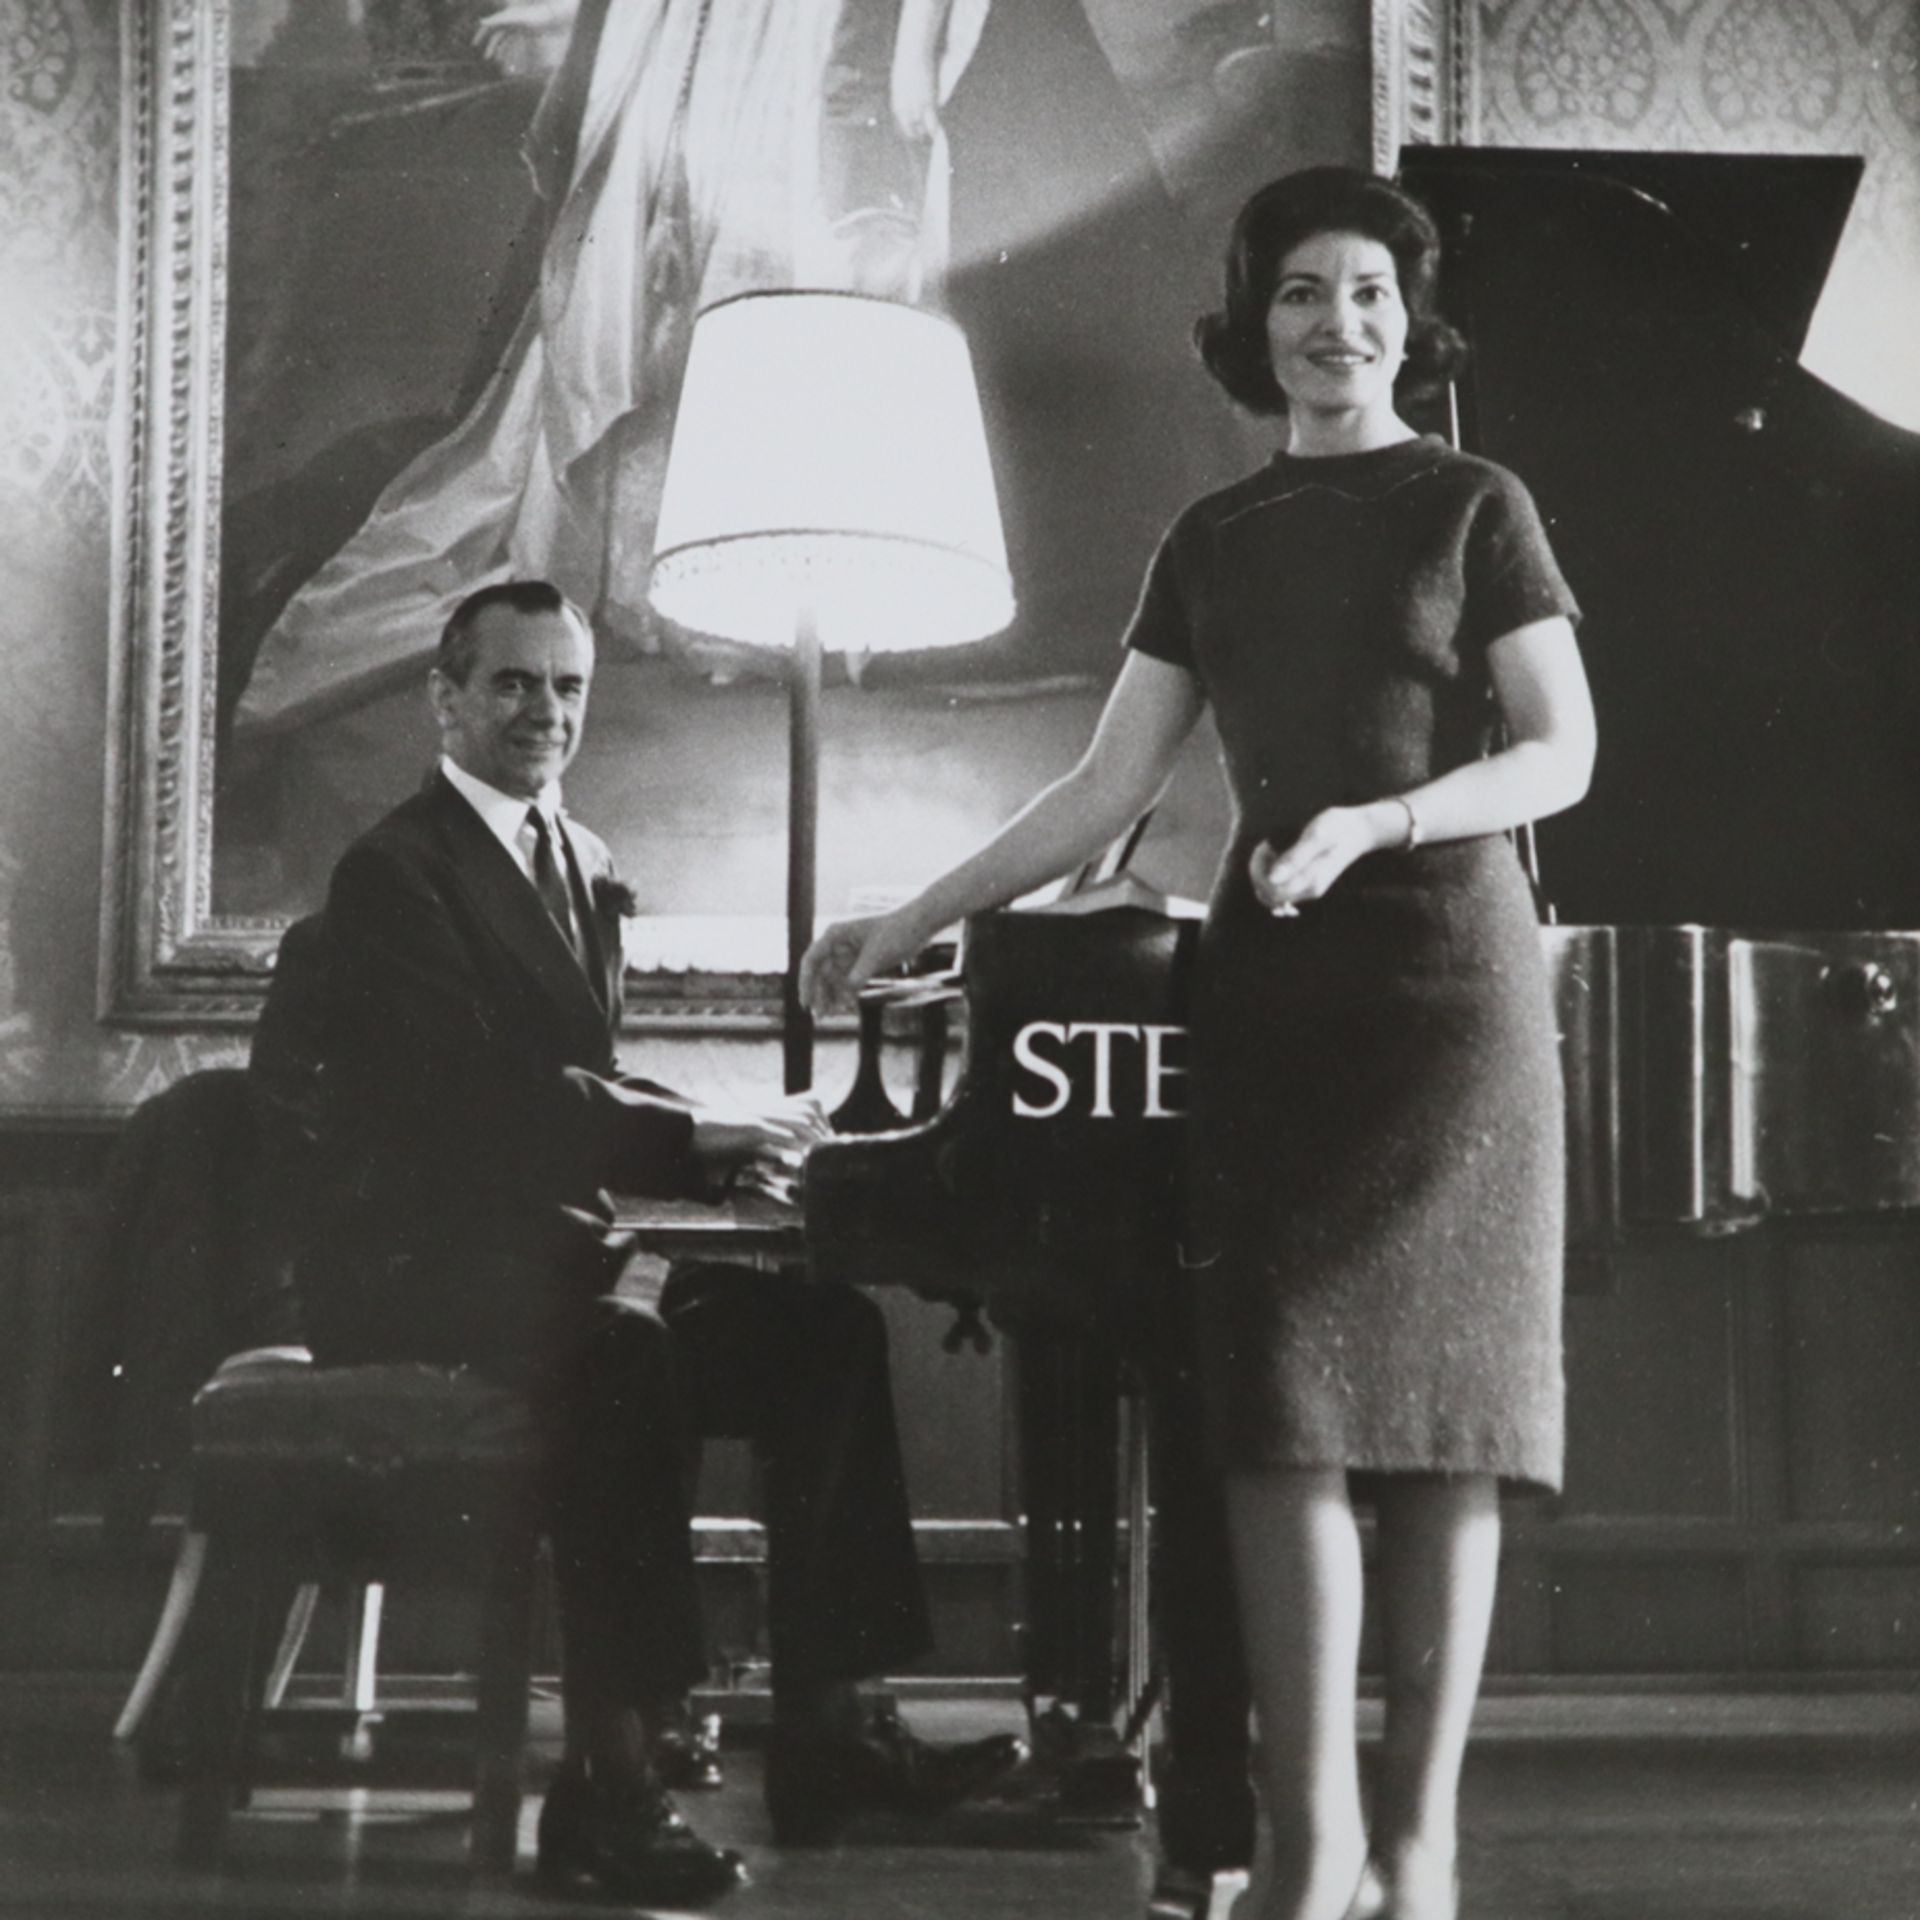 Konvolut: Drei Fotografien von Maria Callas - s/w Fotografien, verso diverse Stempel, unter anderem - Bild 2 aus 7